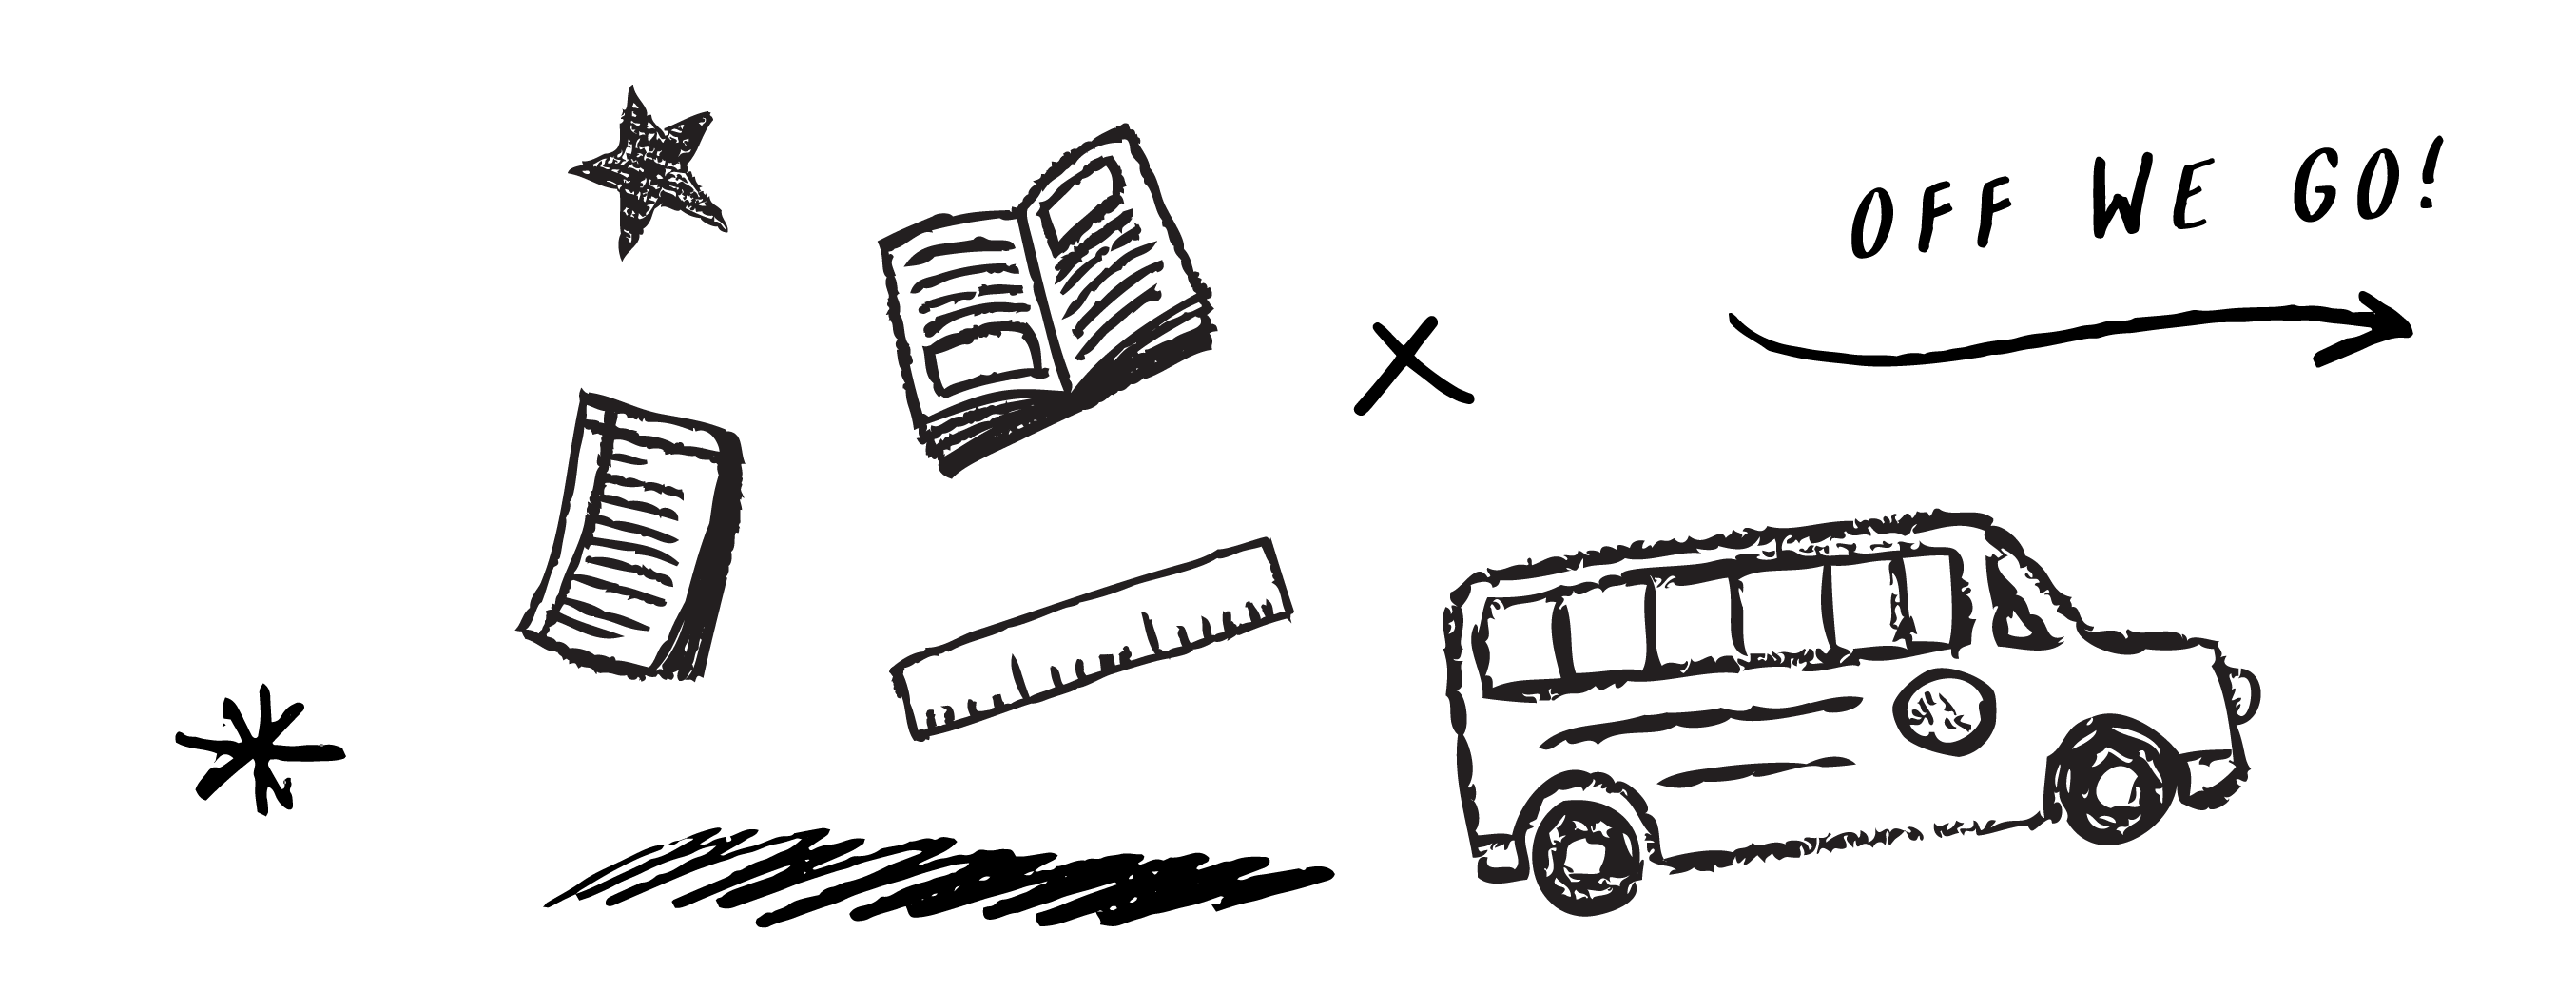 Bus doodle